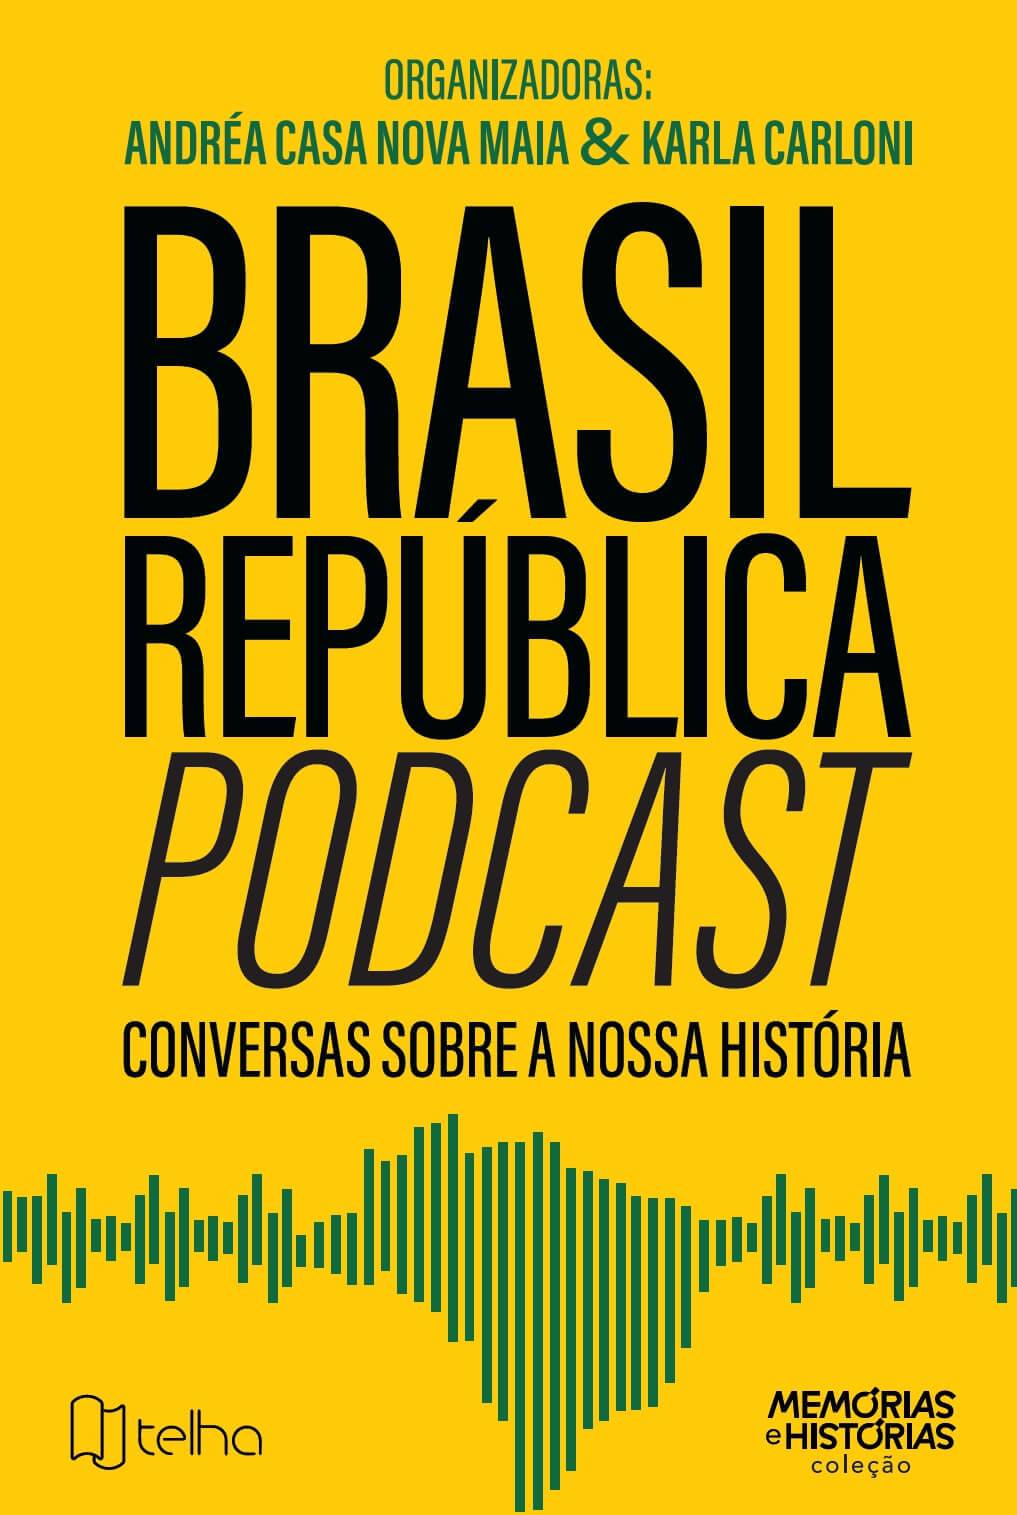 Brasil República Podcast: conversas sobre nossa história - Editora Telha